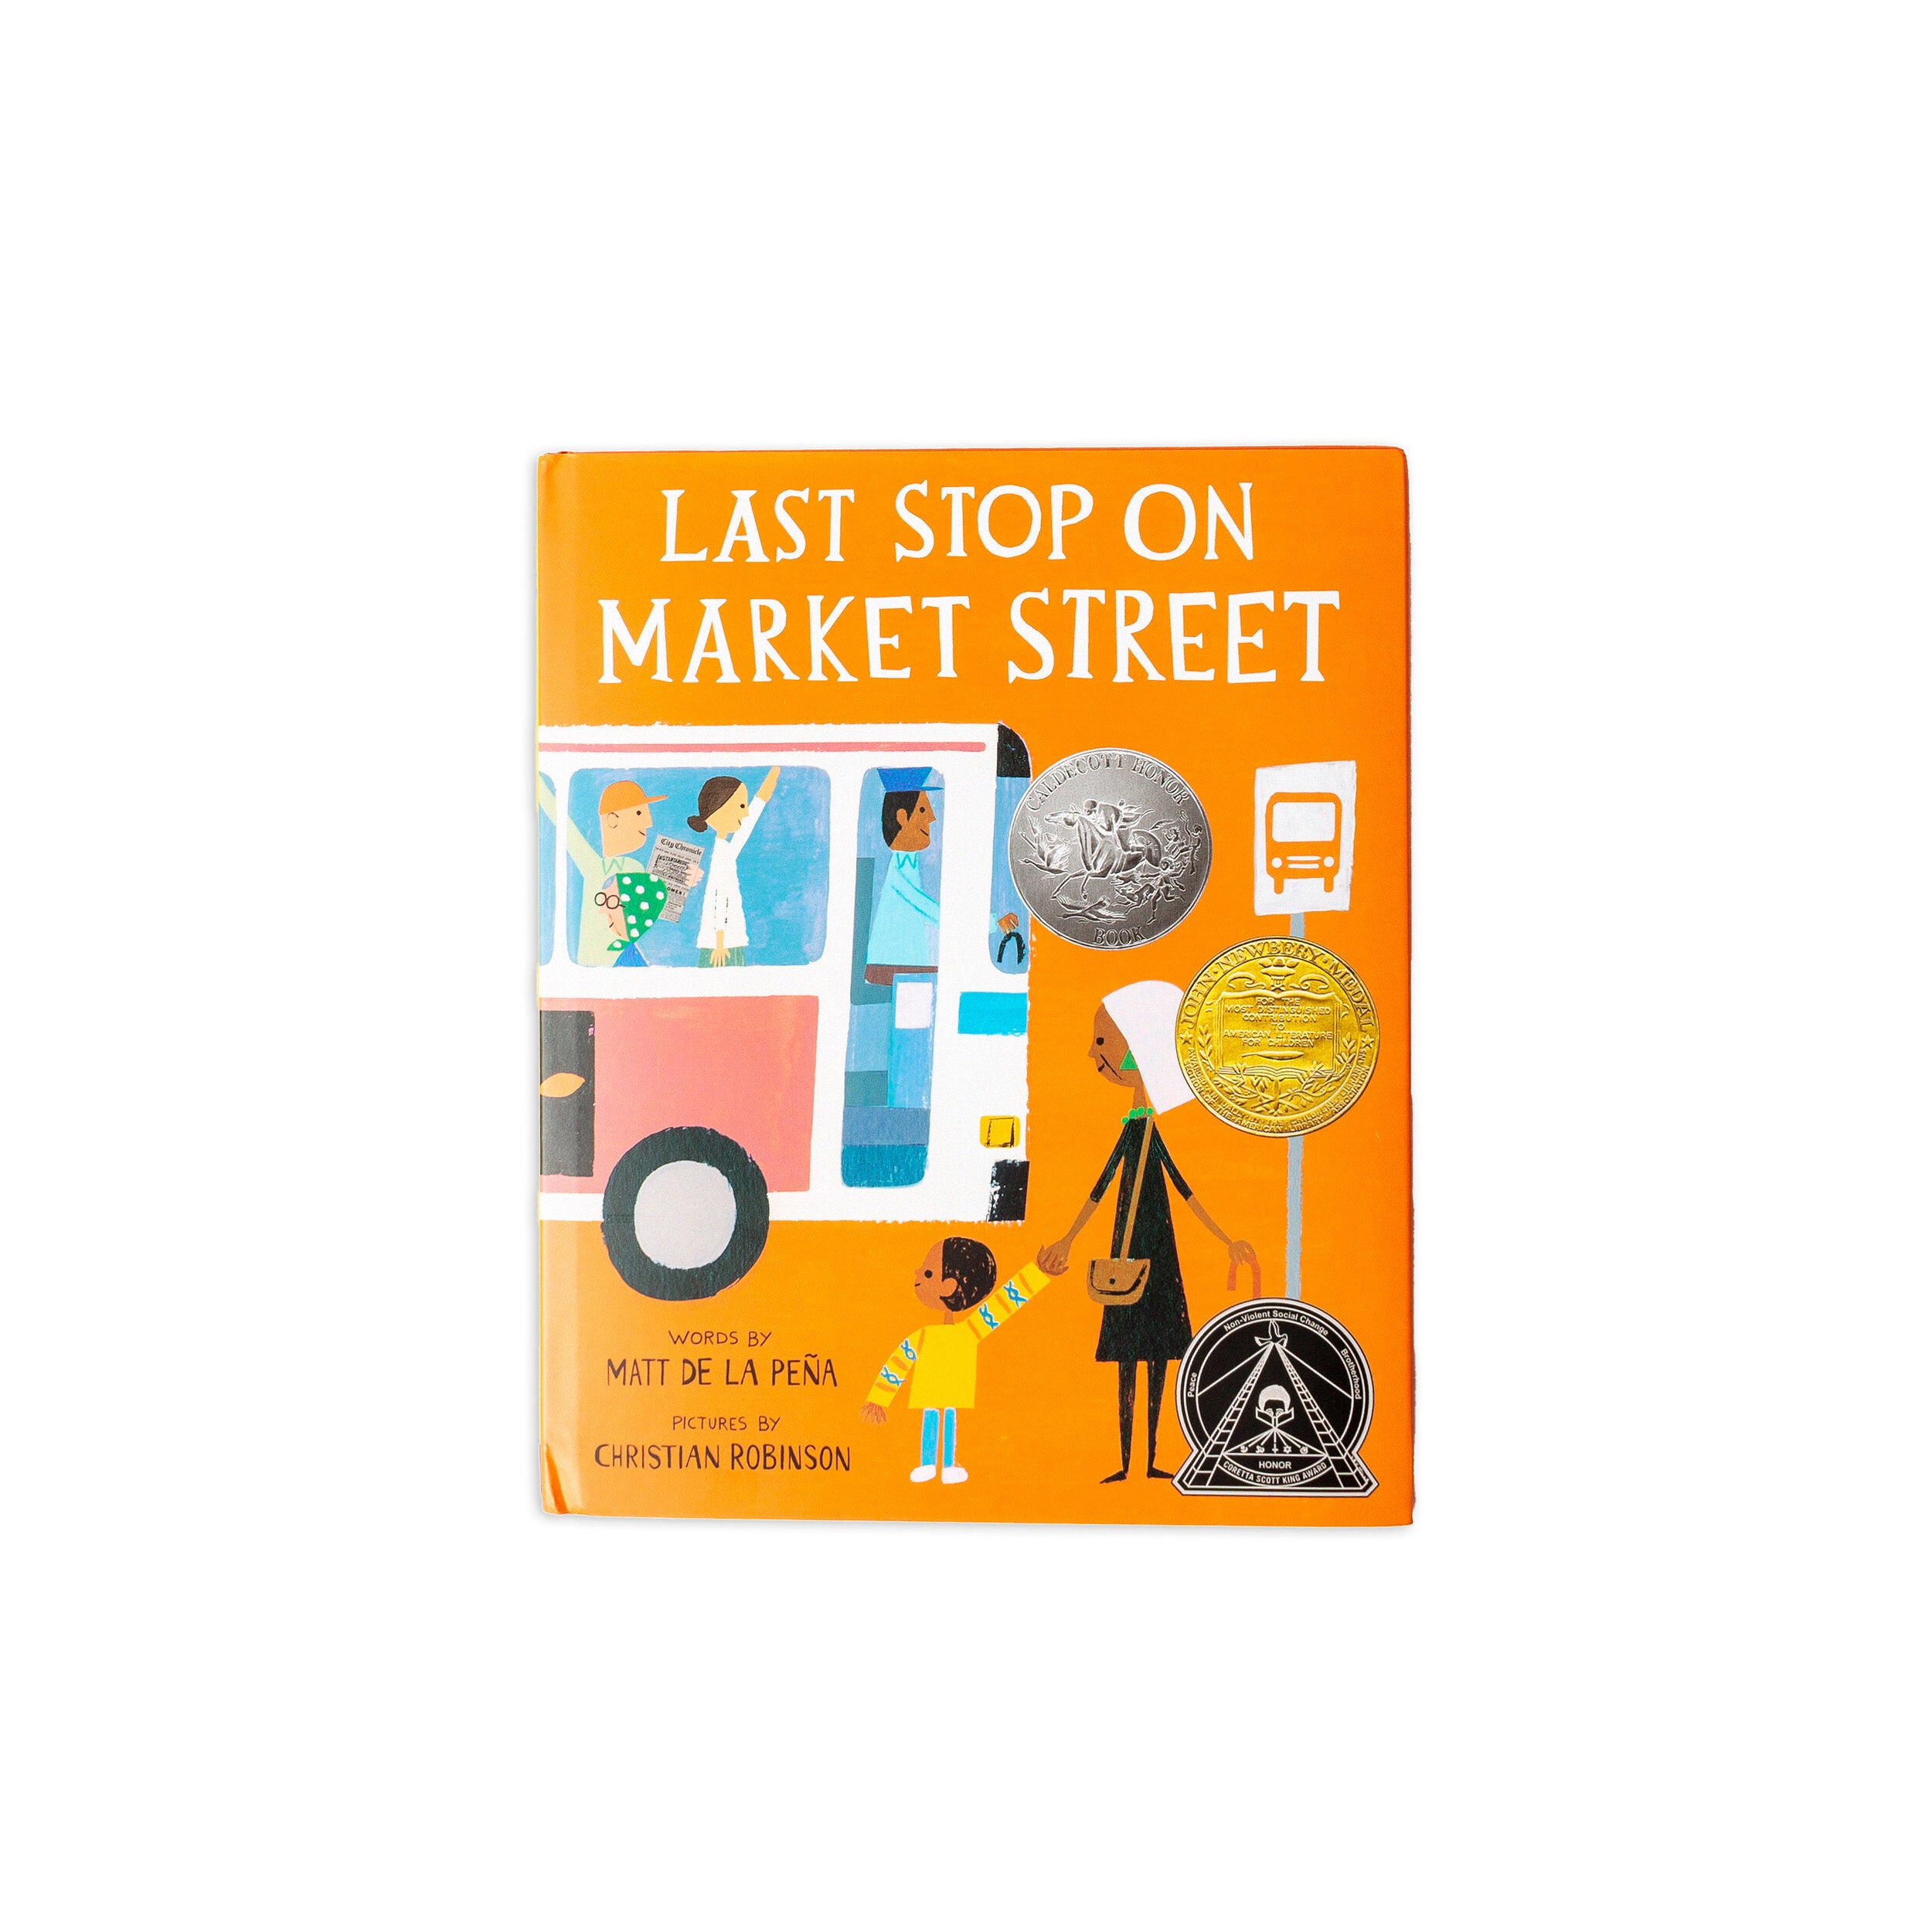 Last Stop on Market Street by Matt de la Pena